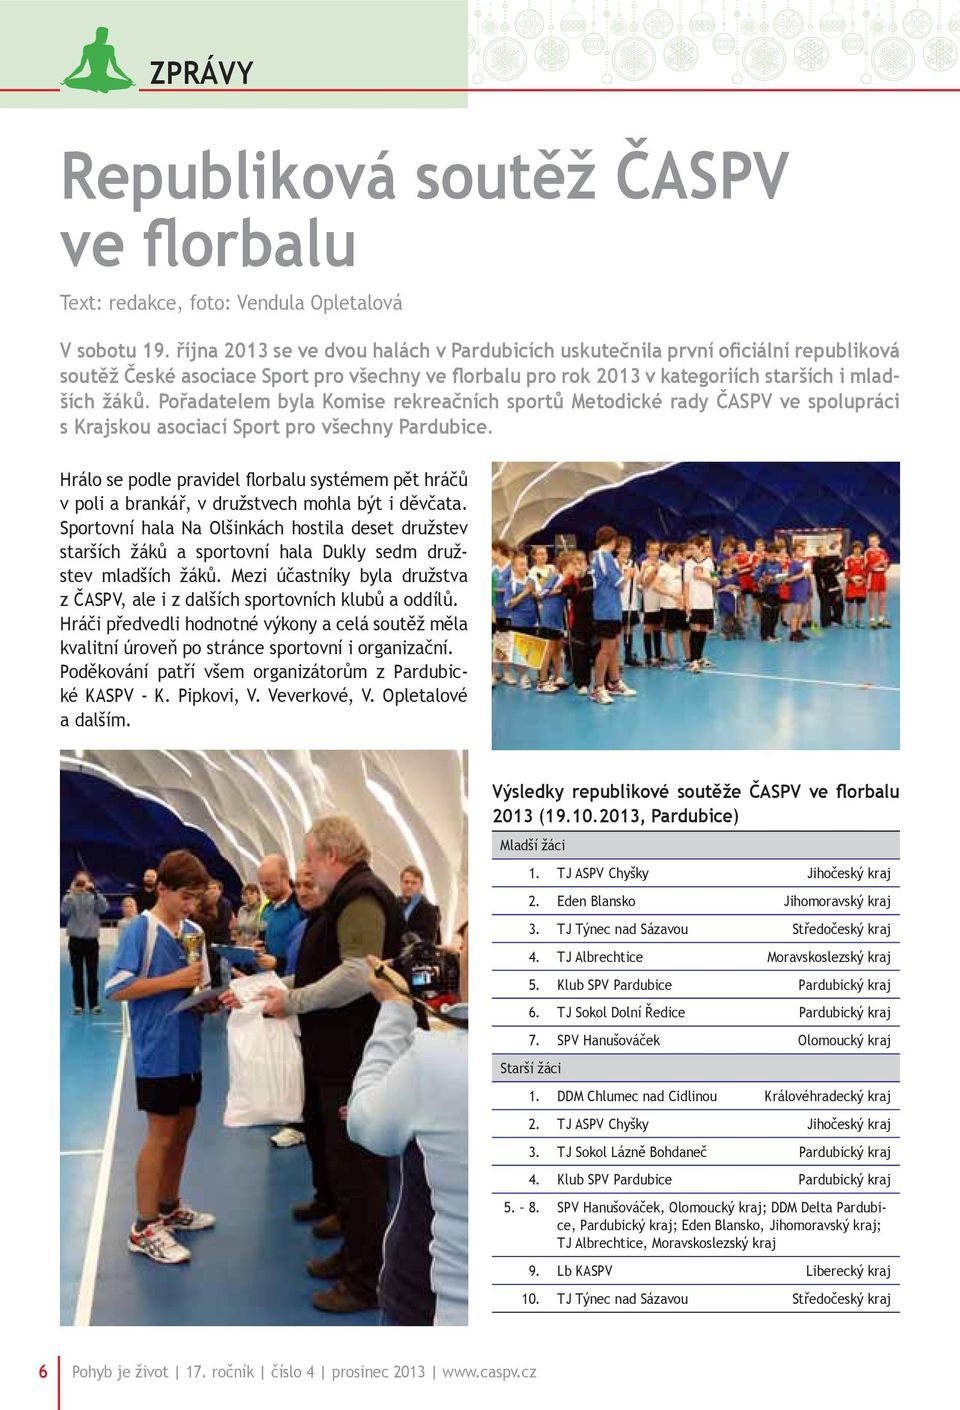 Pořadatelem byla Komise rekreačních sportů Metodické rady ČASPV ve spolupráci s Krajskou asociací Sport pro všechny Pardubice.